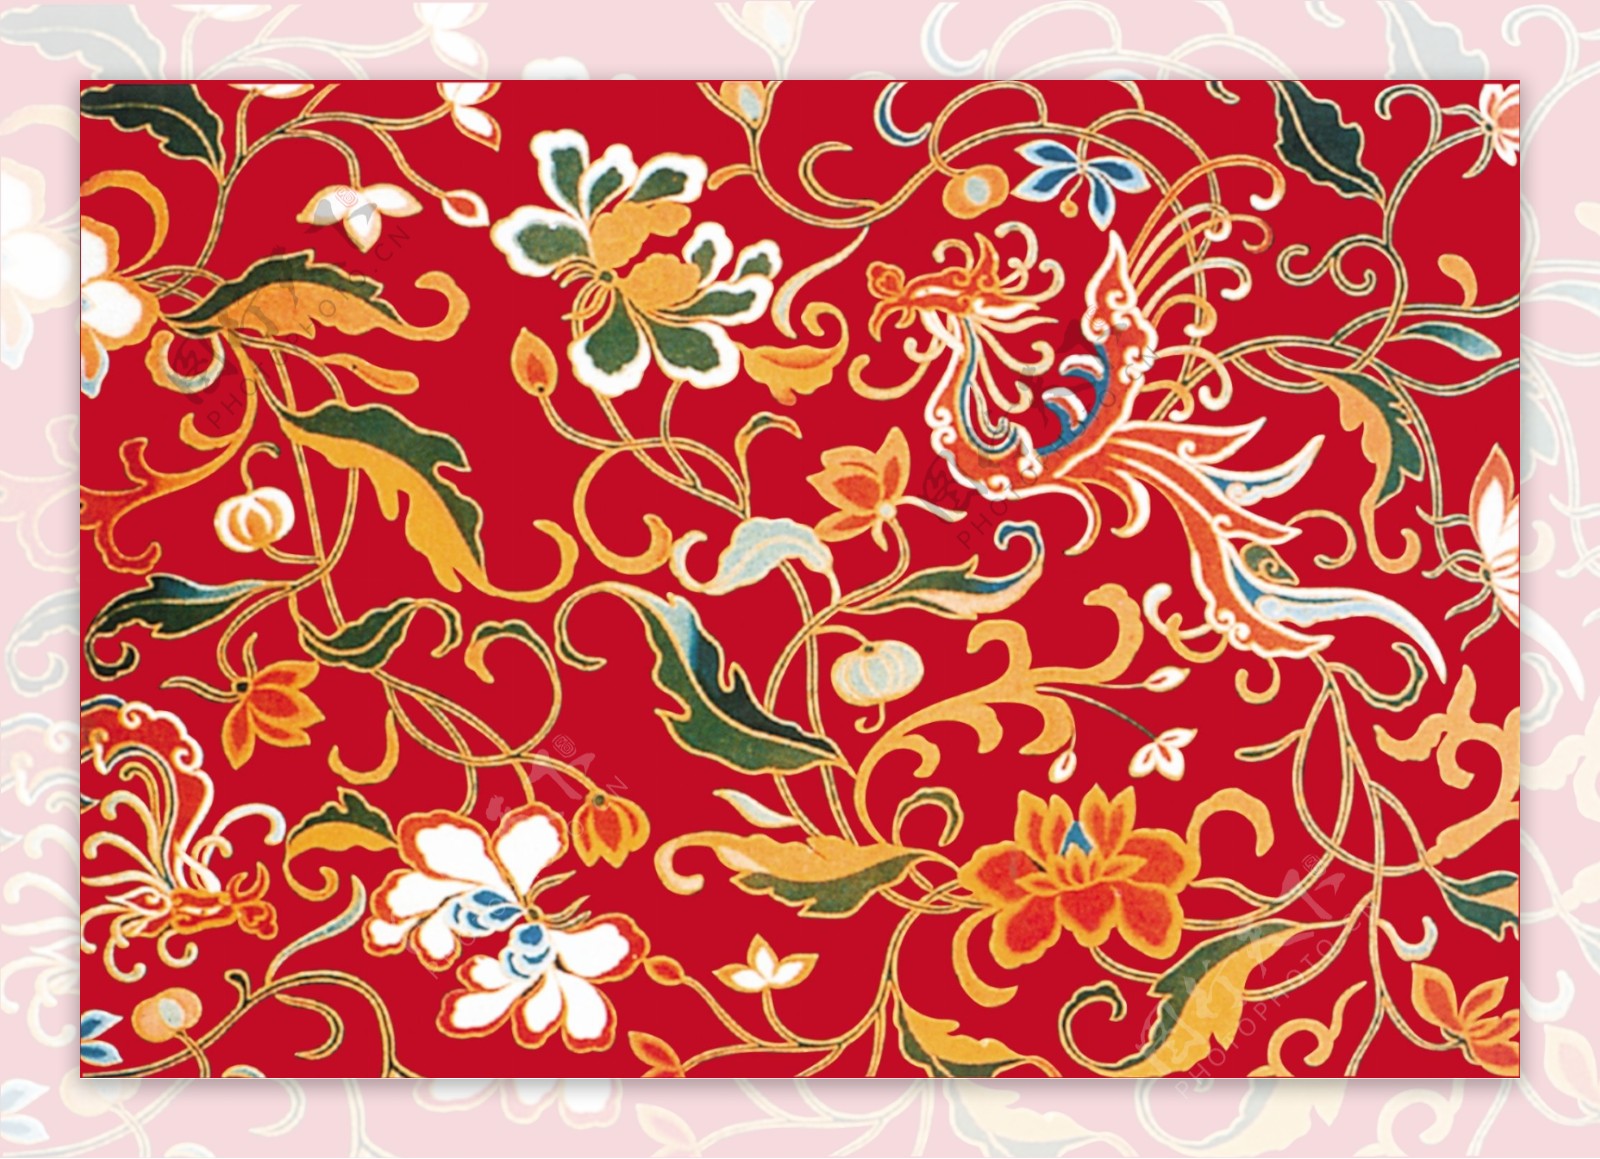 中华刺绣绣花民间艺术PSD分层素材源文件中国传统元素整合图库